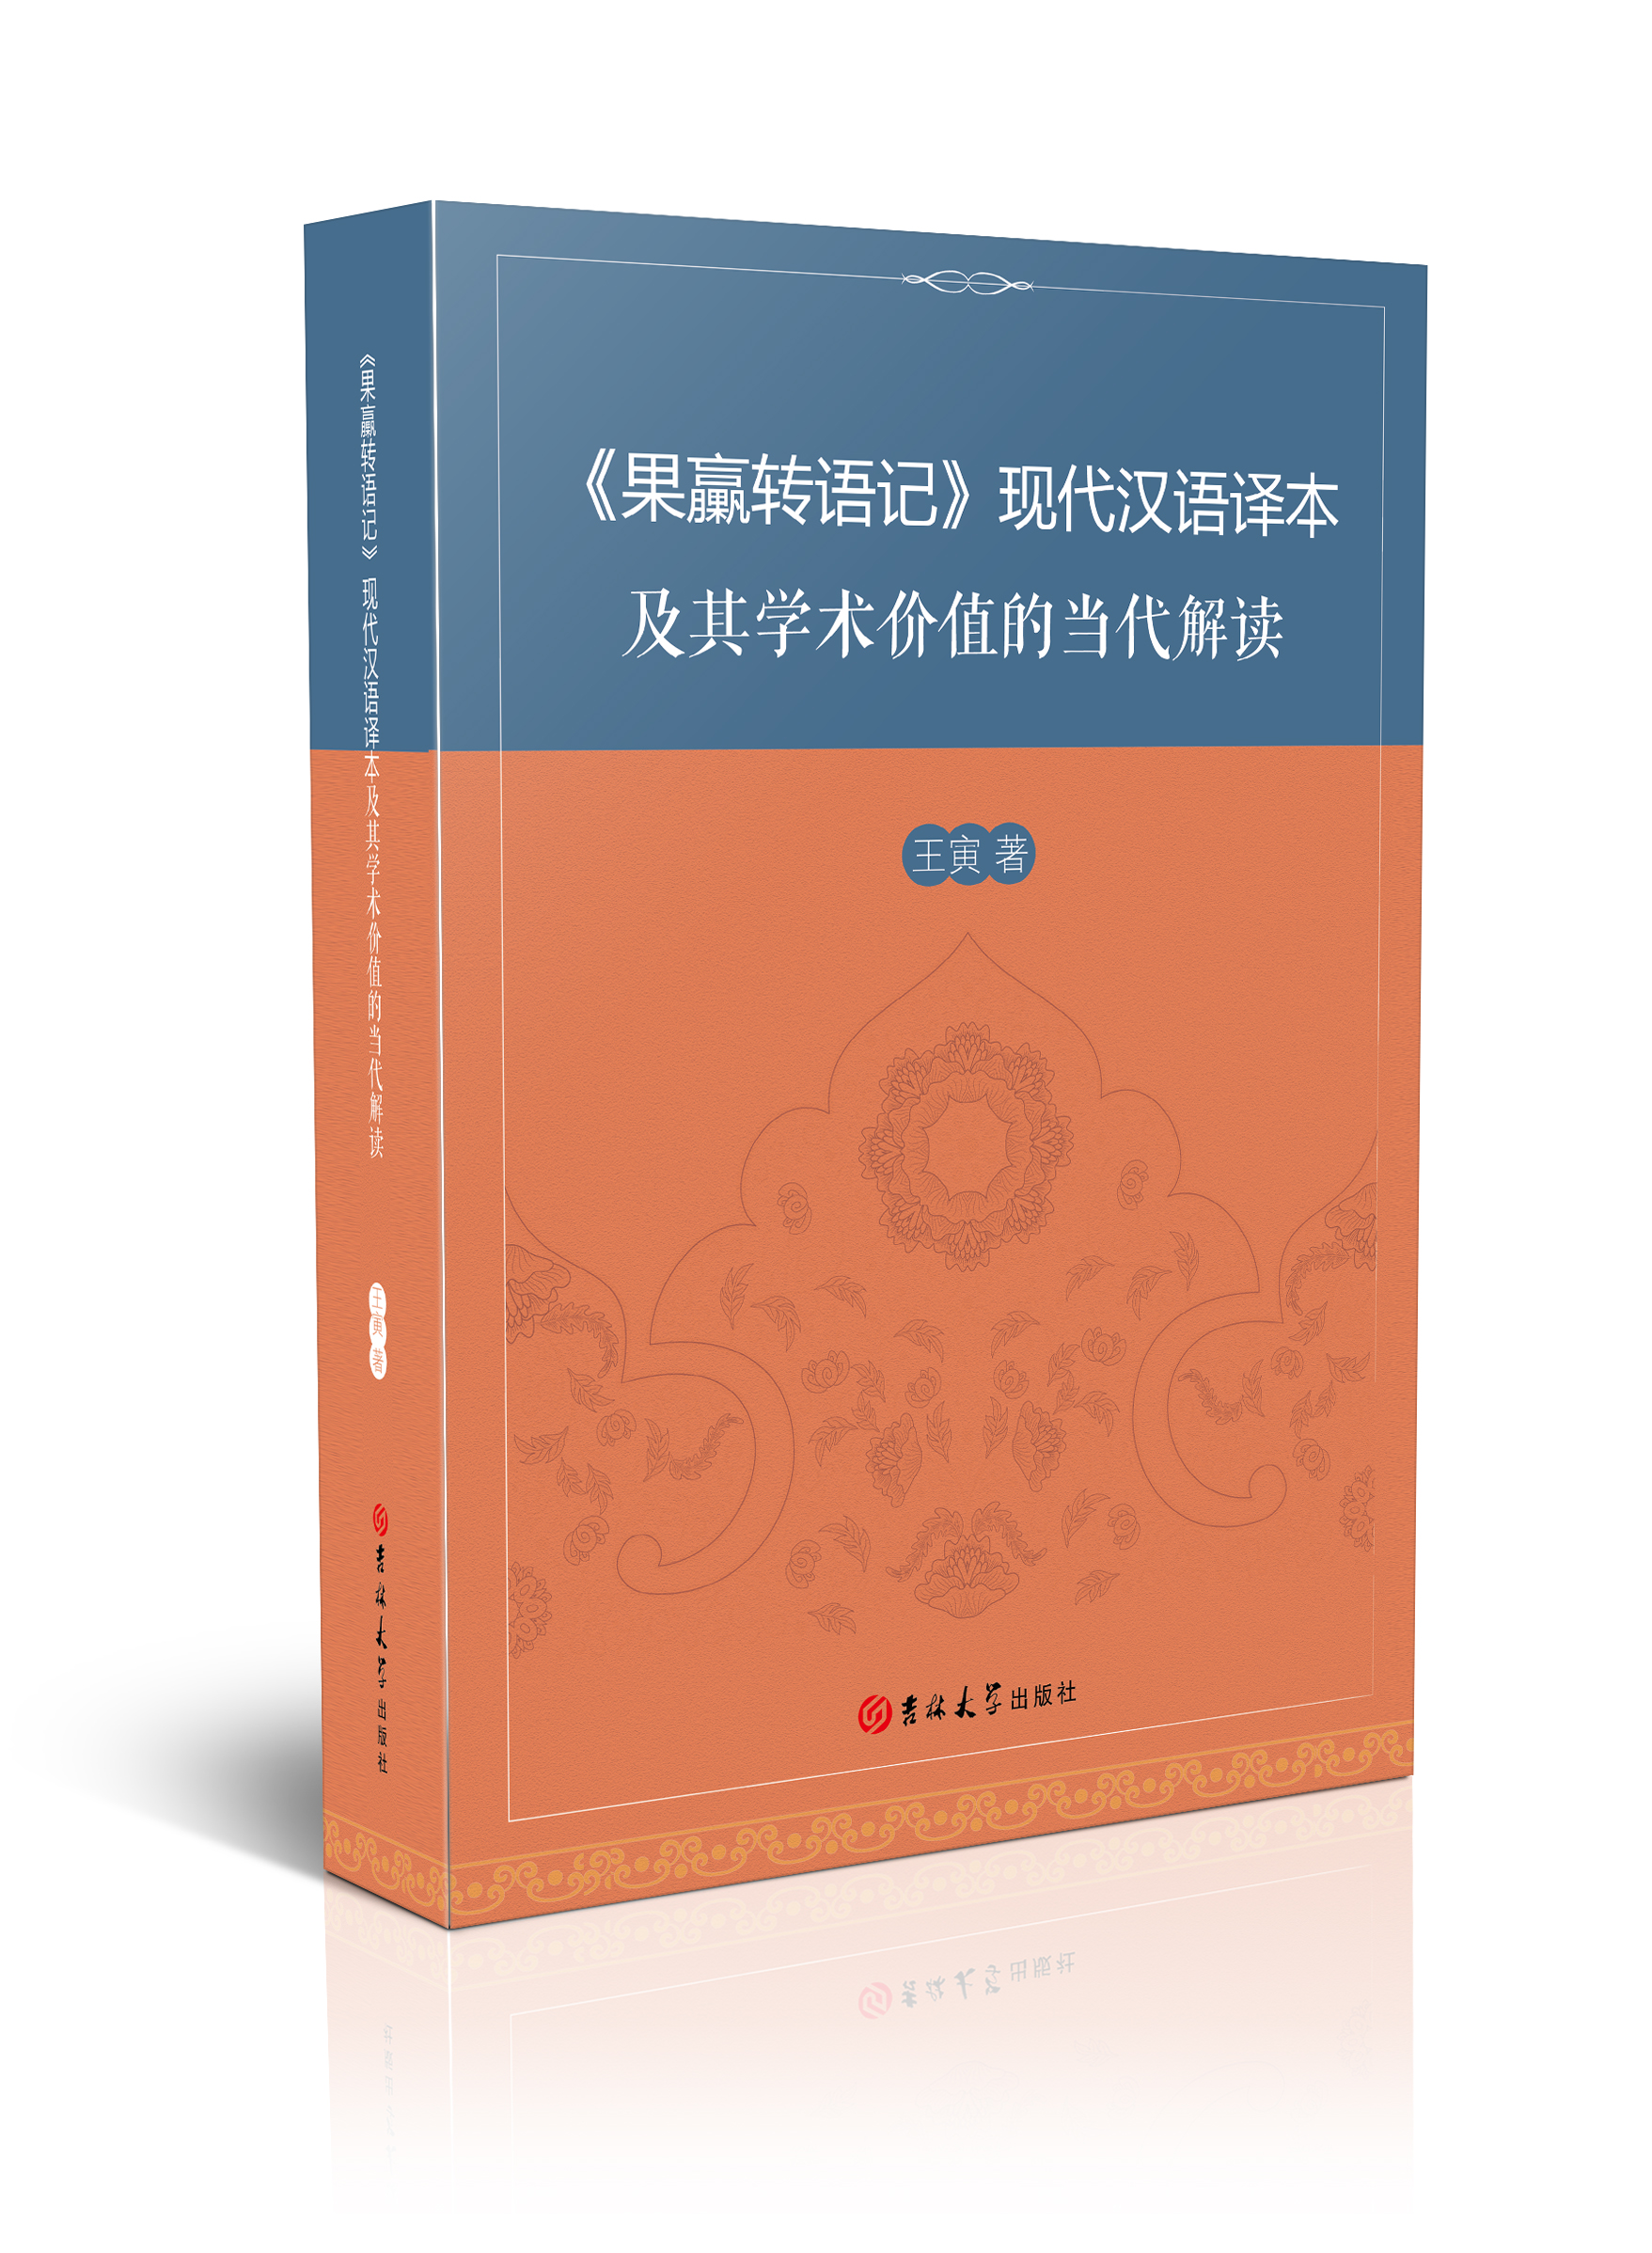 《果臝转语记》现代汉语译本及其学术价值的当代解读